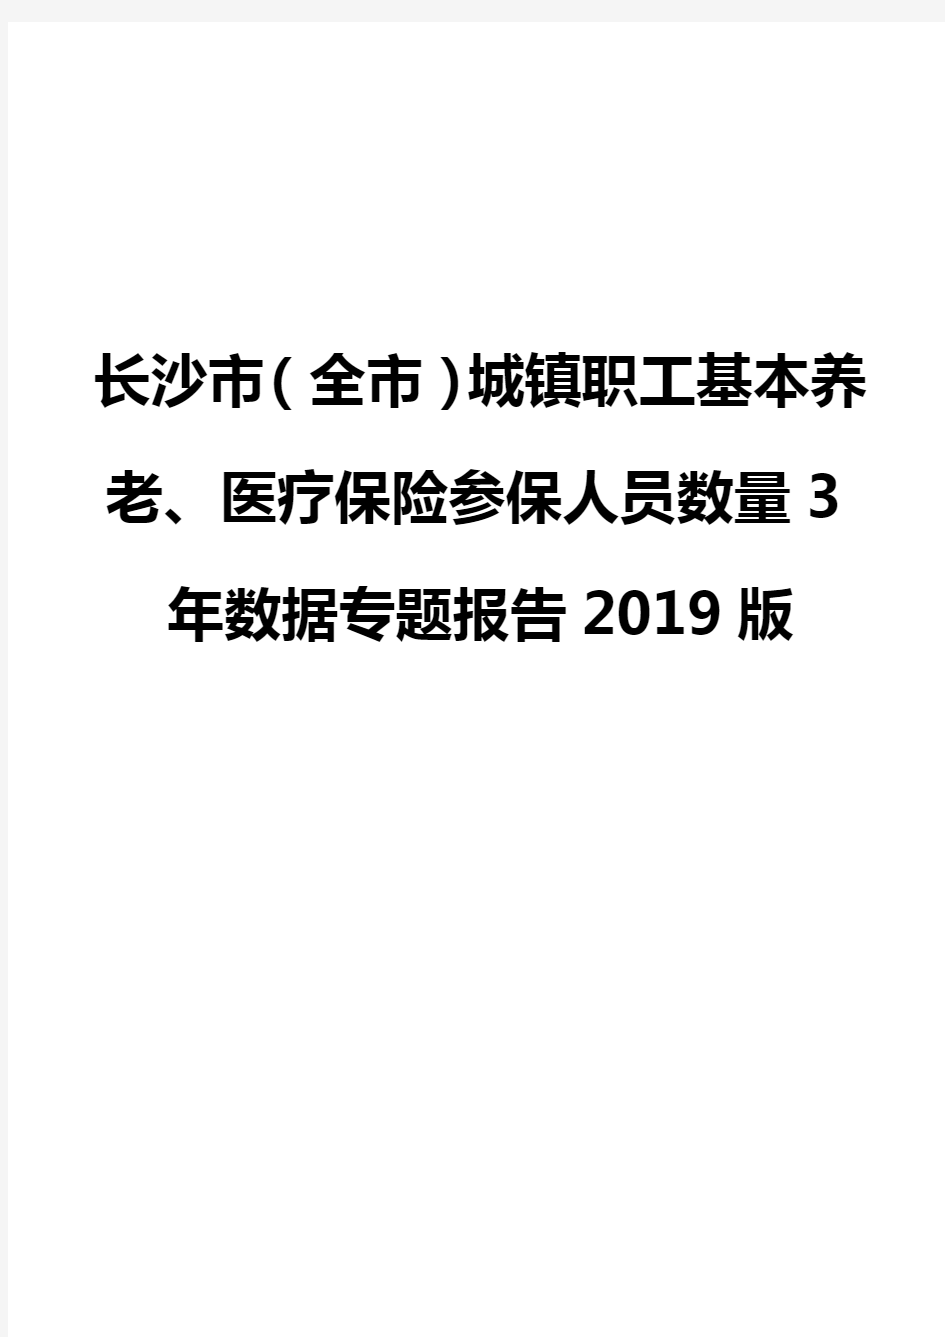 长沙市(全市)城镇职工基本养老、医疗保险参保人员数量3年数据专题报告2019版